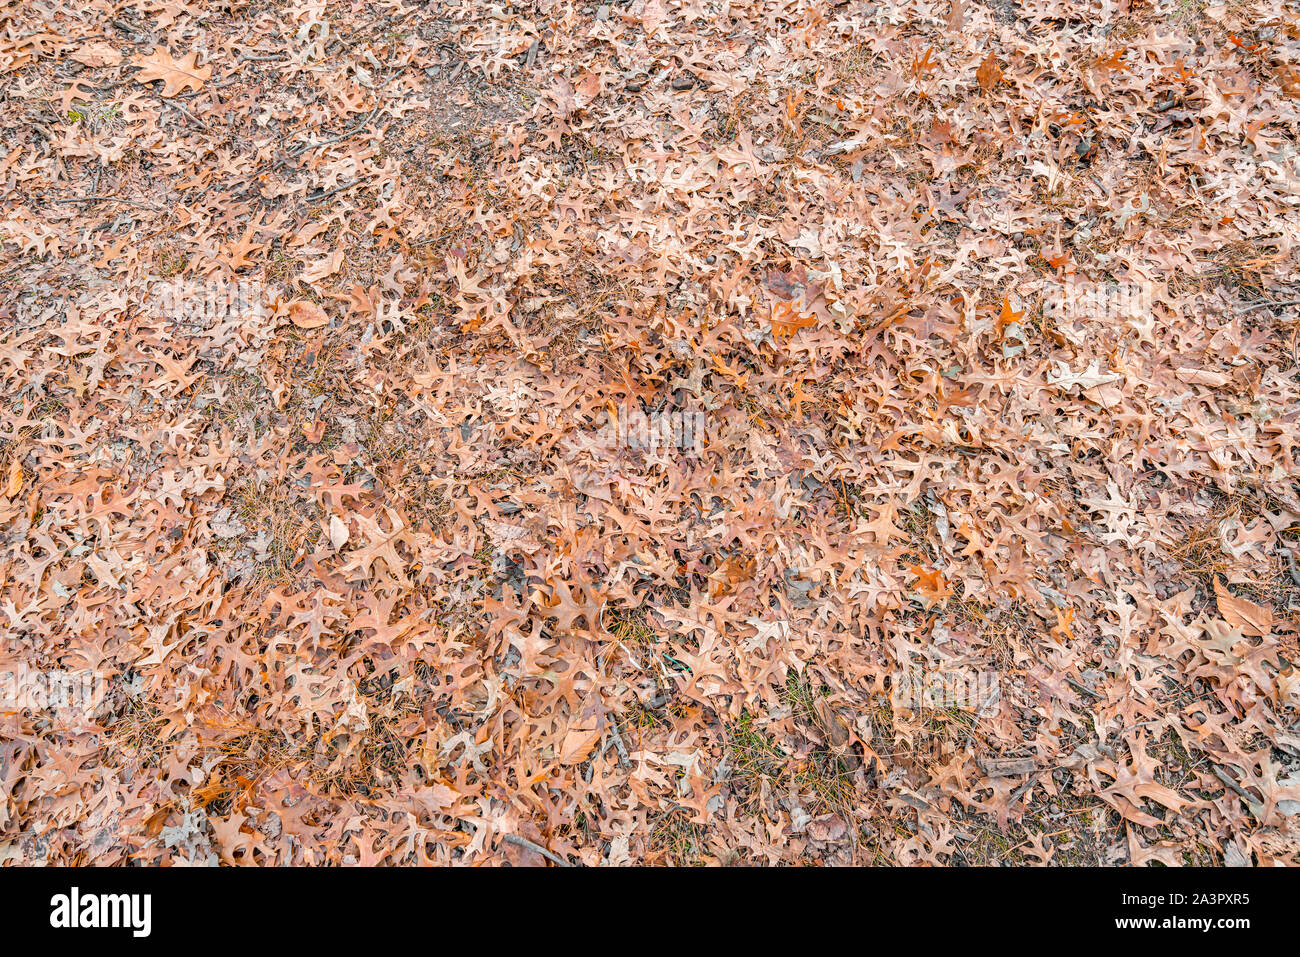 Hintergrund orange Herbst Herbst und Winter Blätter auf dem Boden des Central Park, New York, USA, im Dezember. Stockfoto